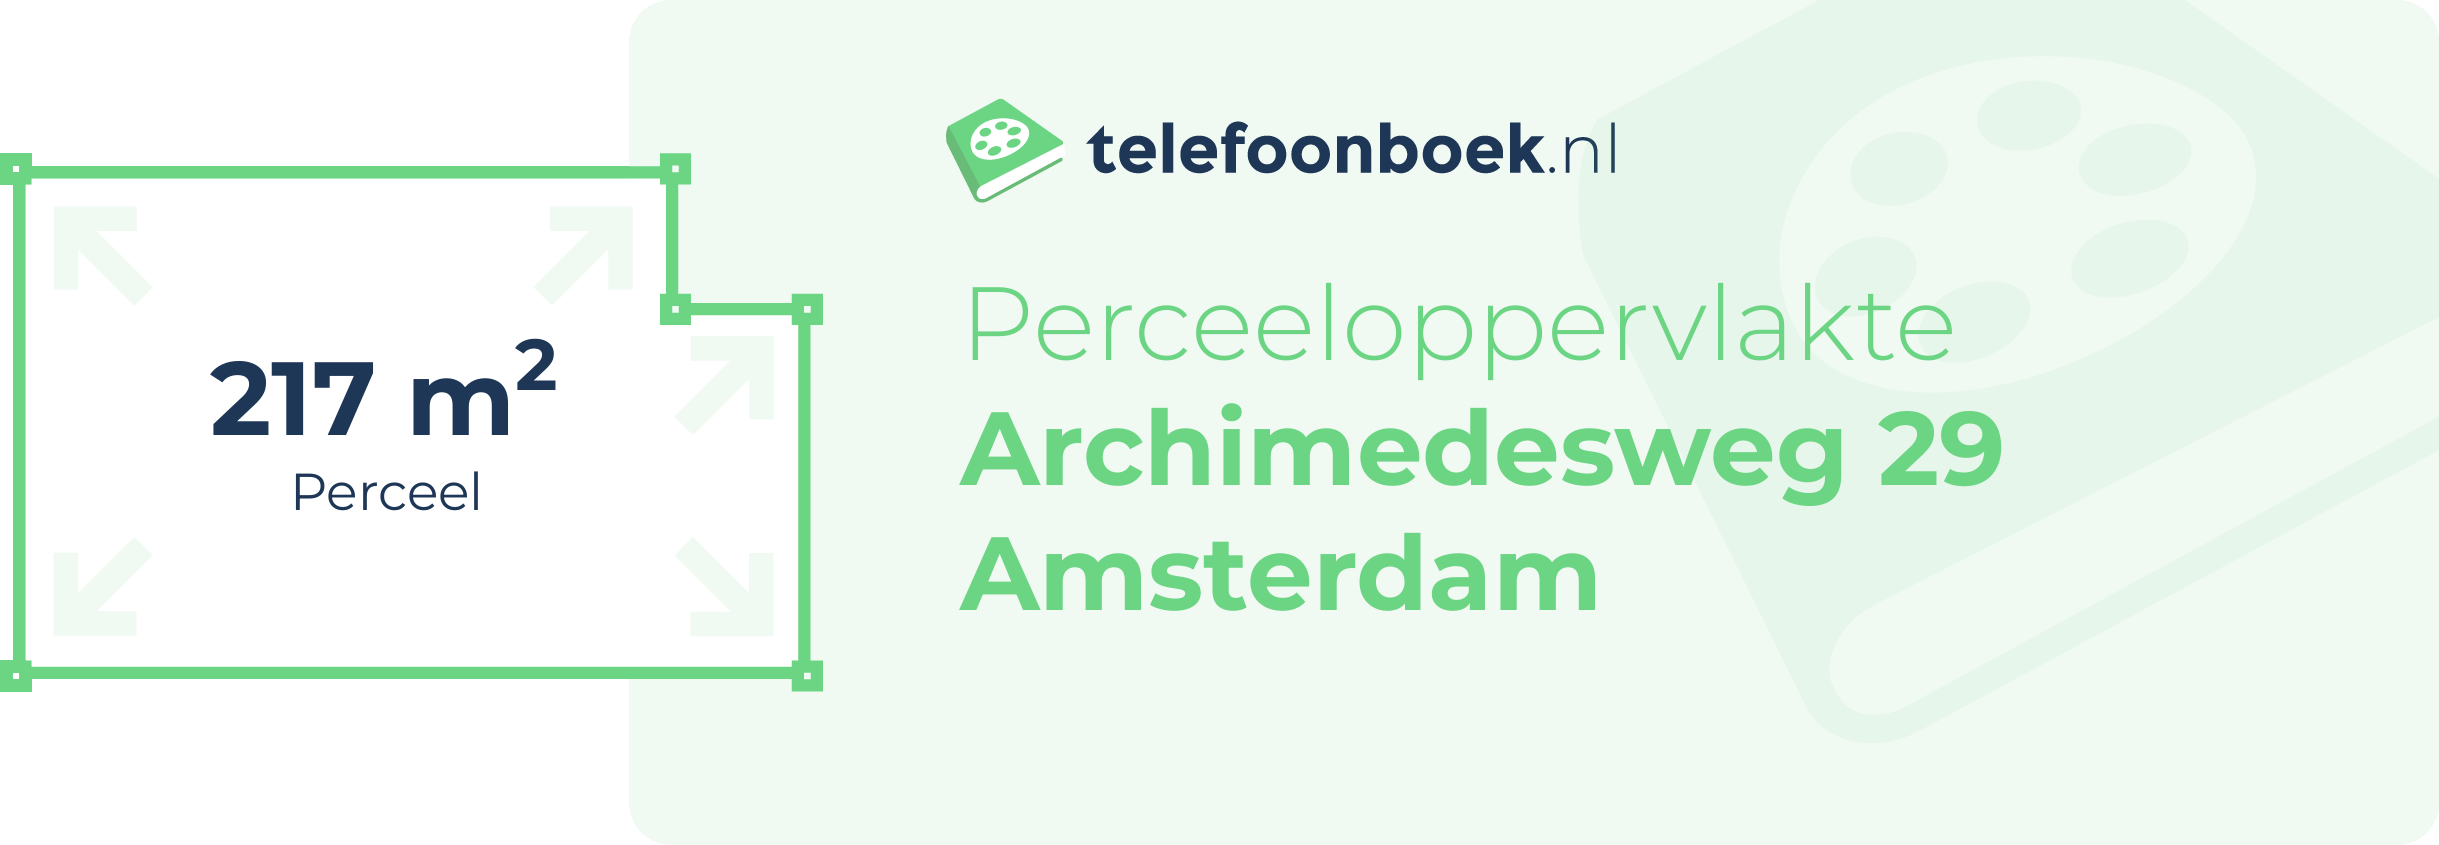 Perceeloppervlakte Archimedesweg 29 Amsterdam